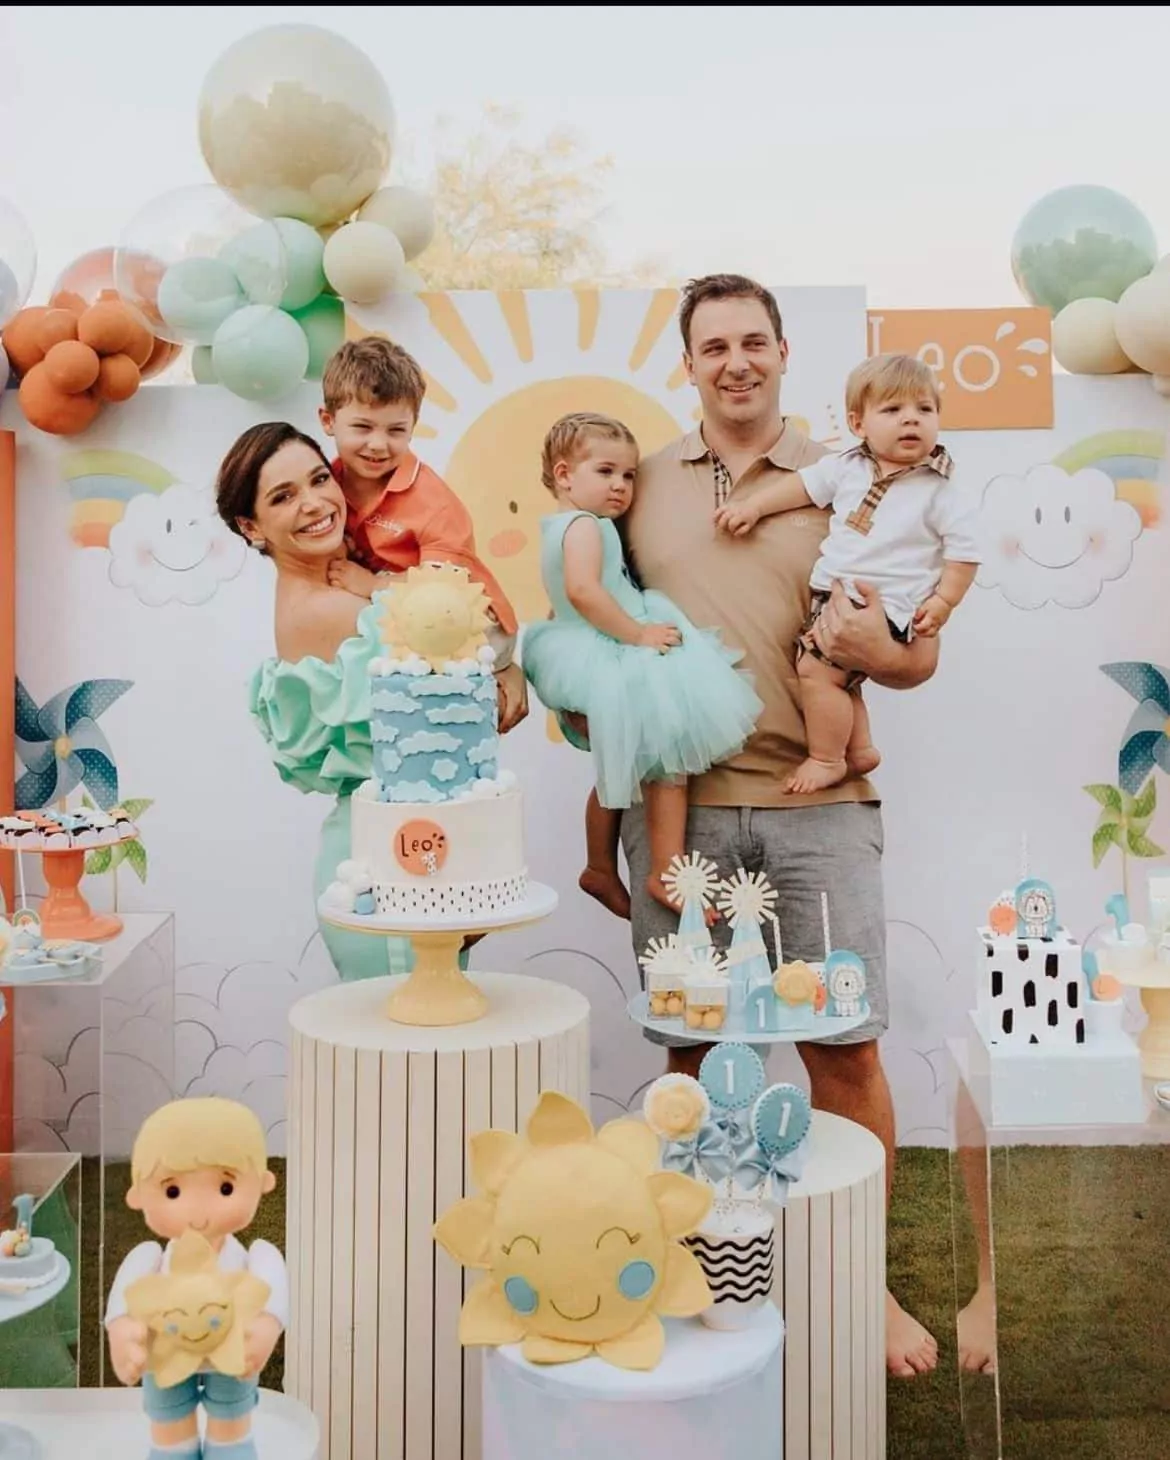 Sabrina Petraglia exibe festa de aniversário de seu bebê em Dubai